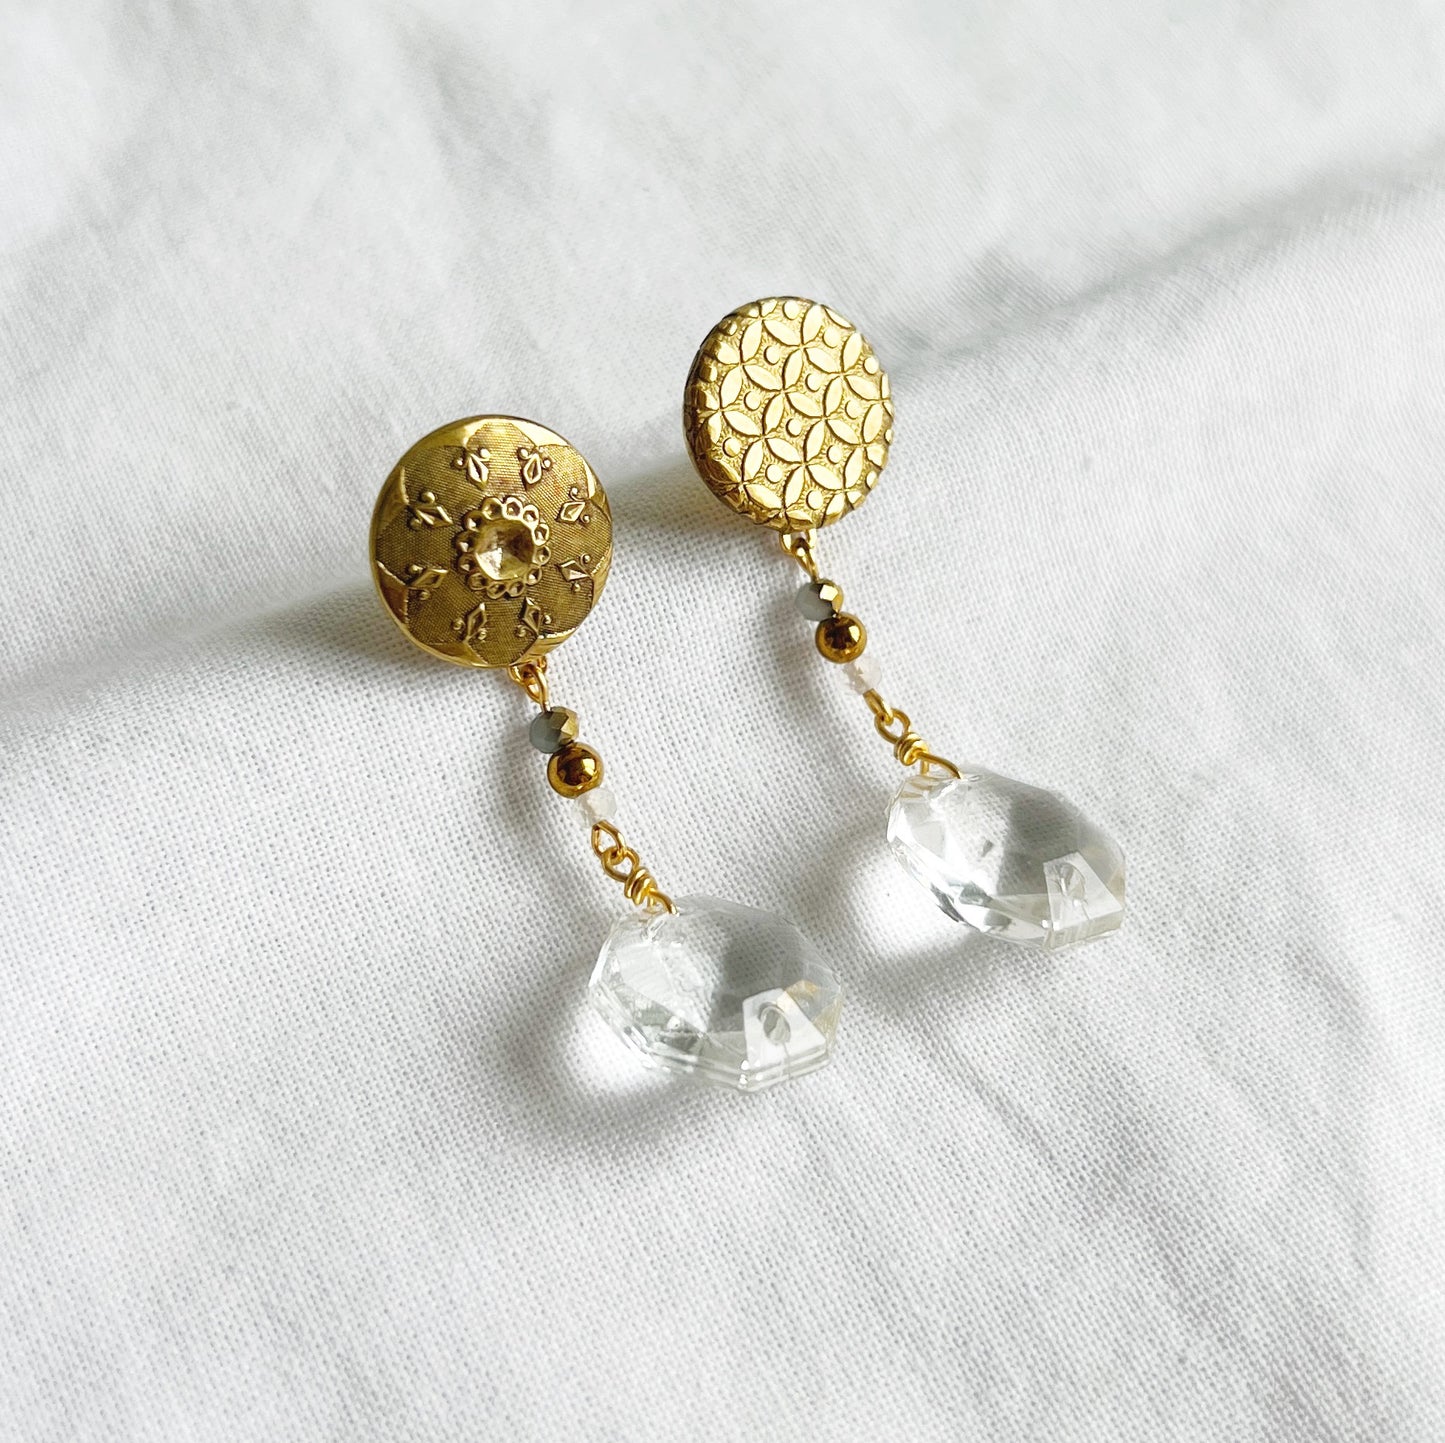 Vintage button earrings -chandelier glass-